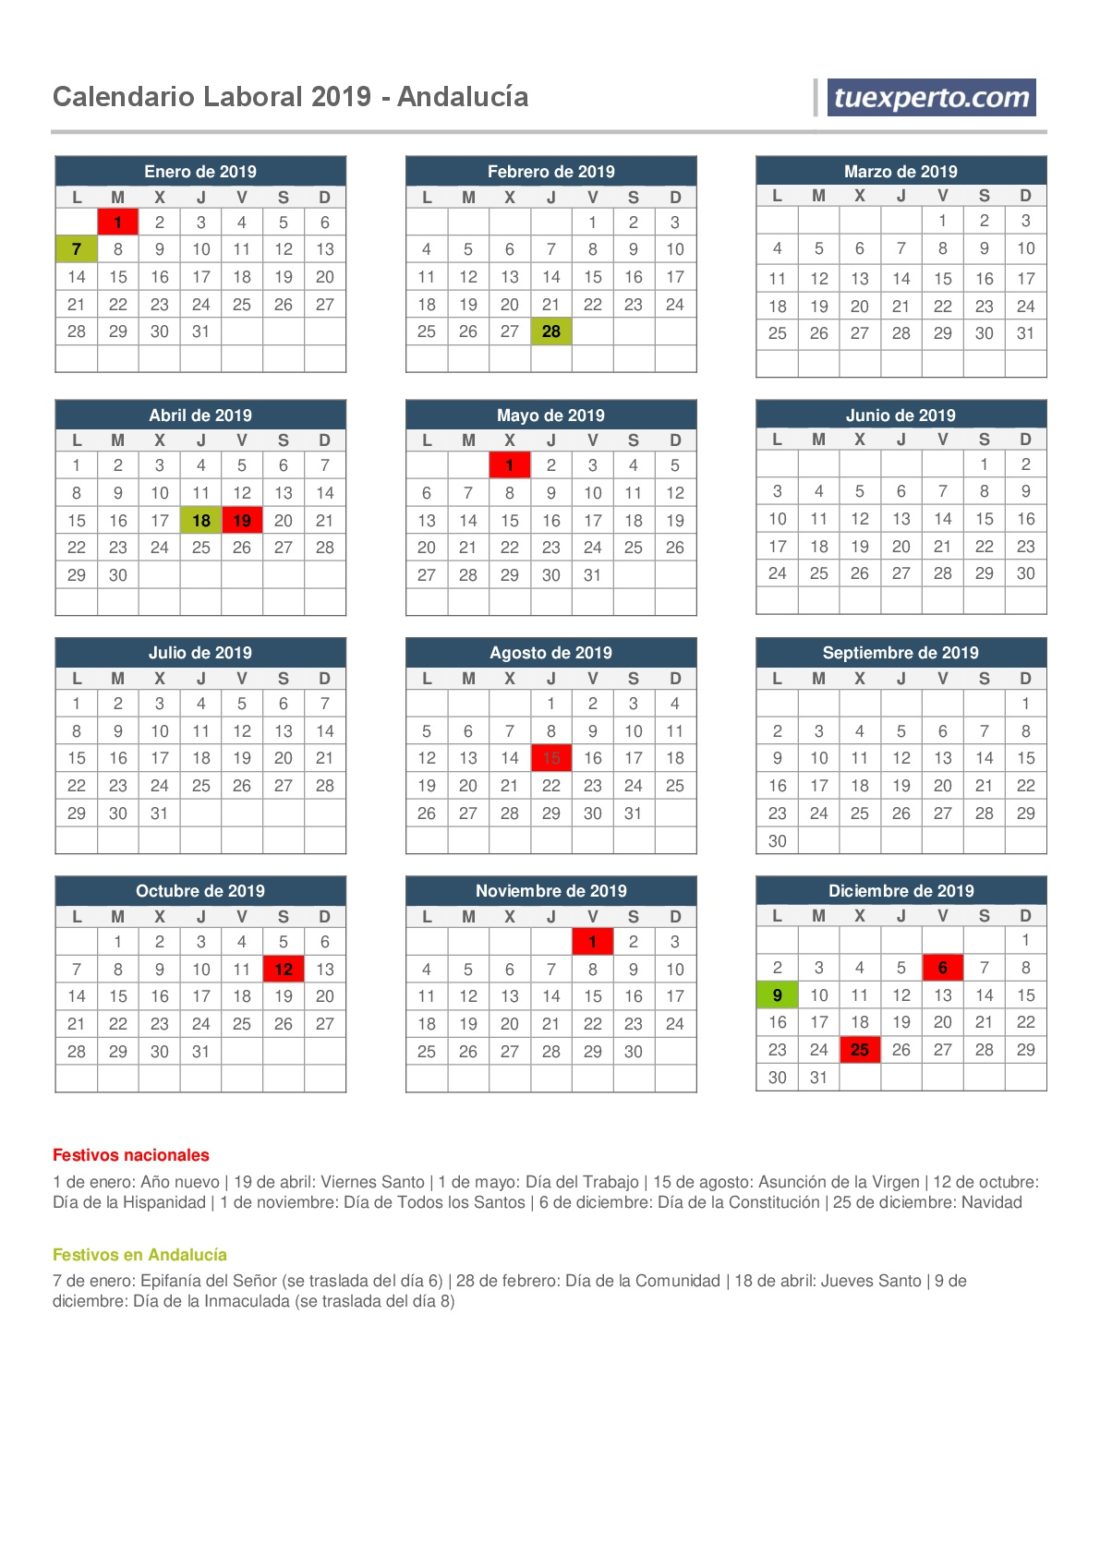 Andalucía calendario laboral